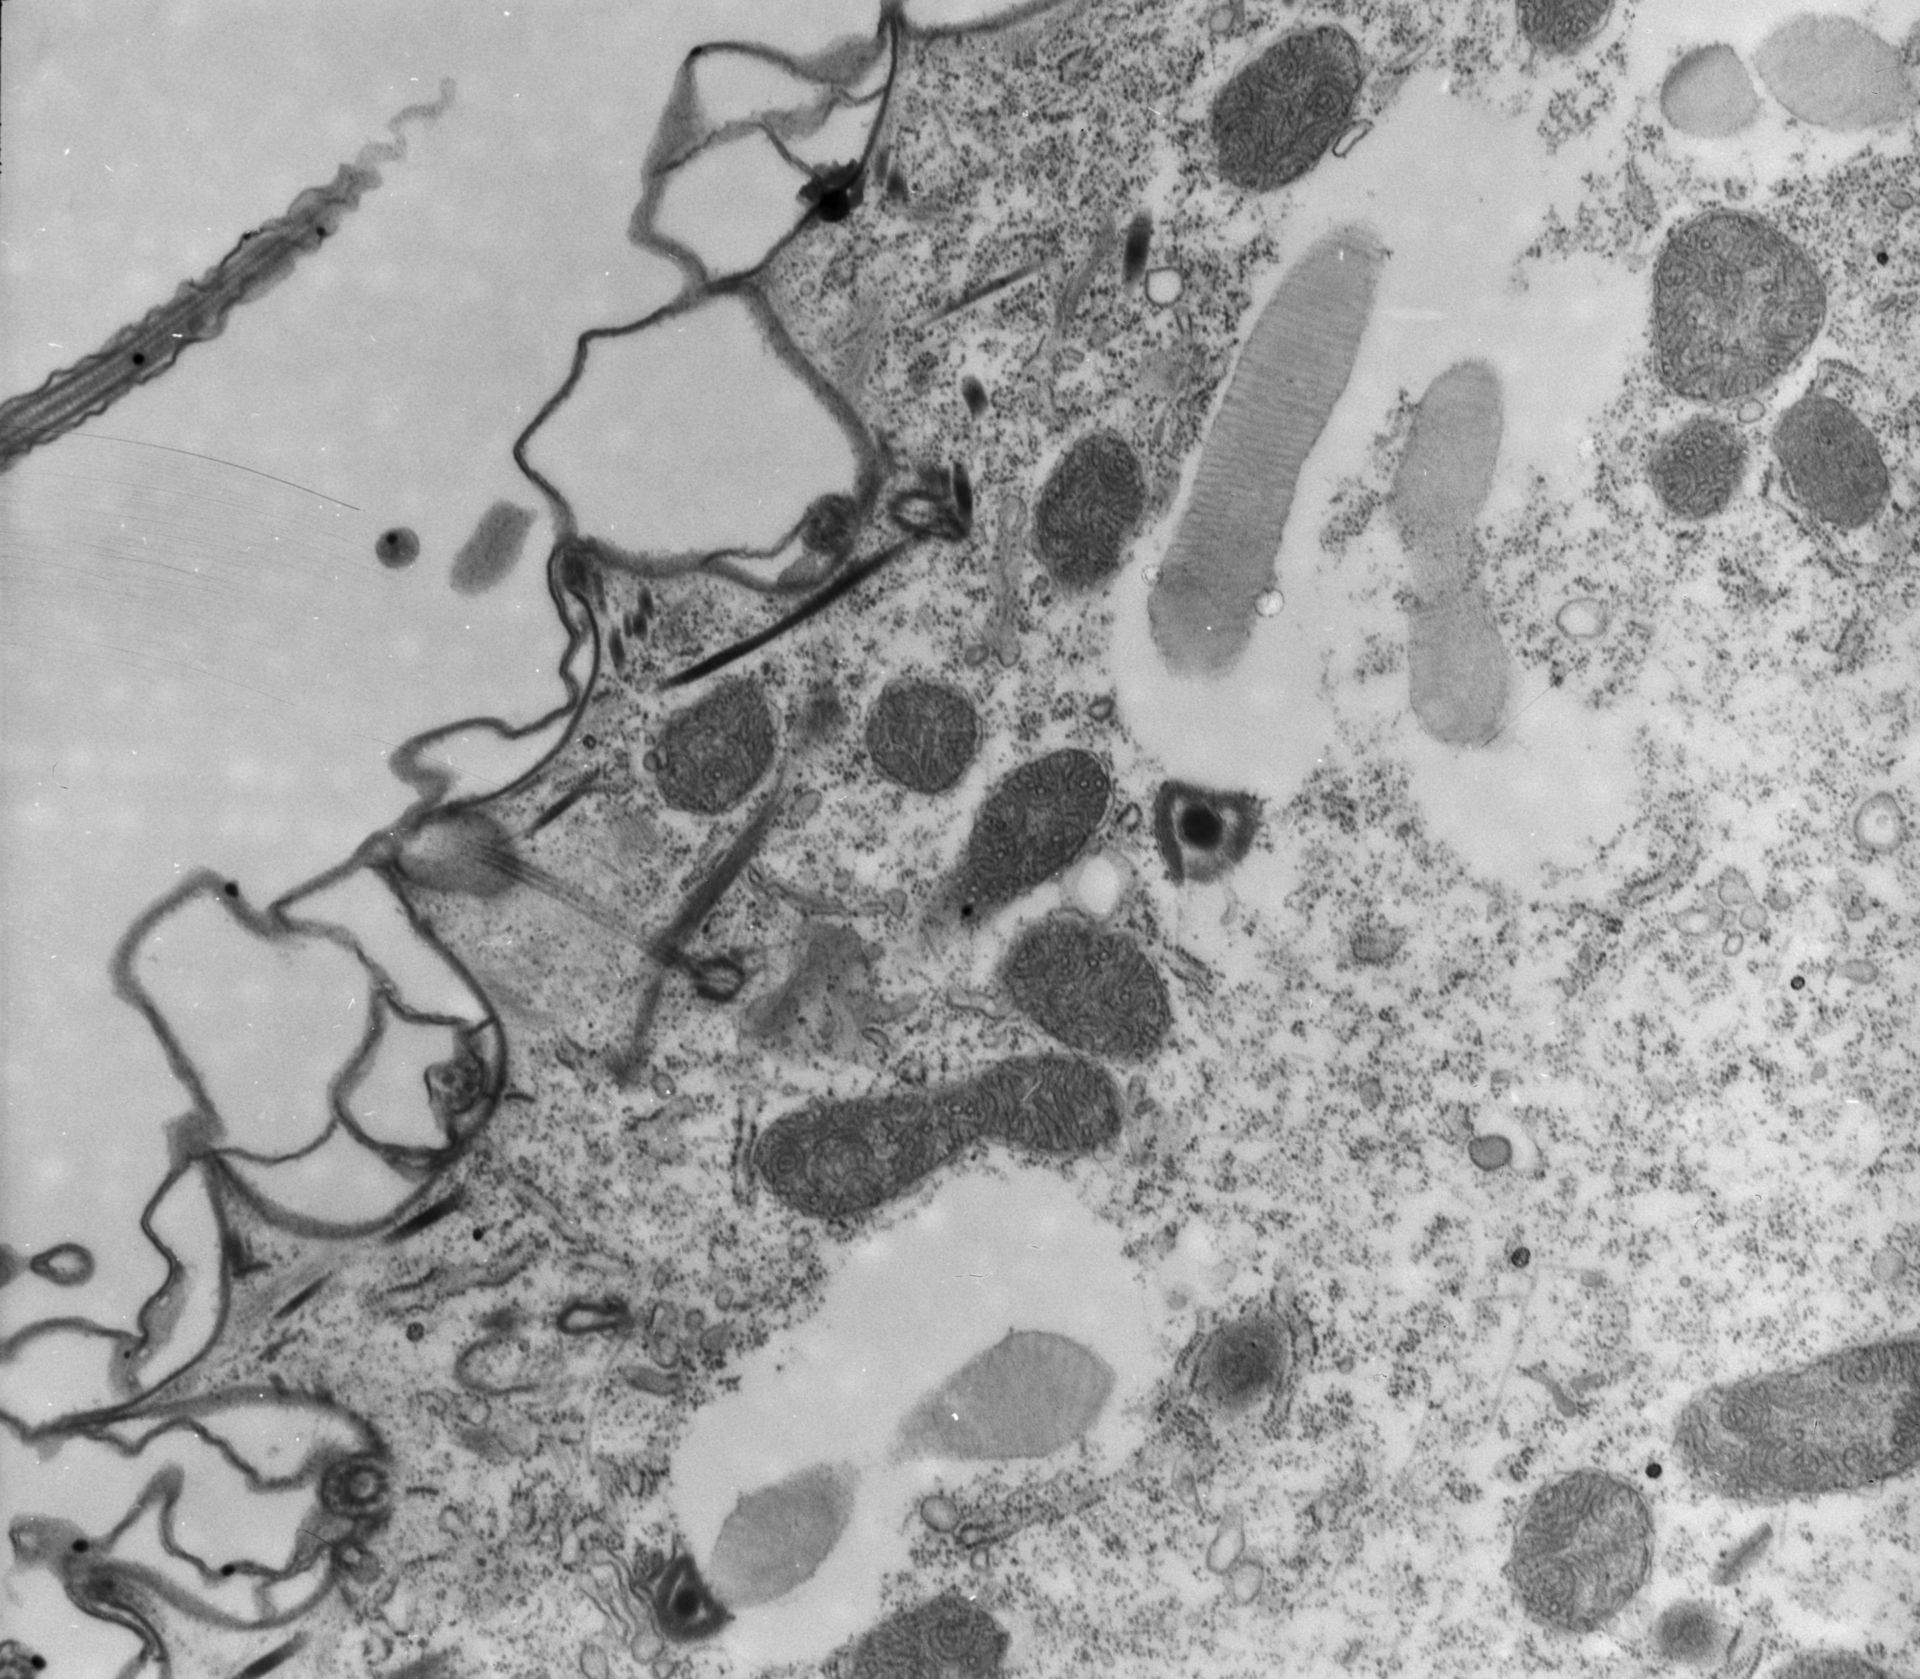 Paramecium multimicronucleatum (Trichocyst) - CIL:12073